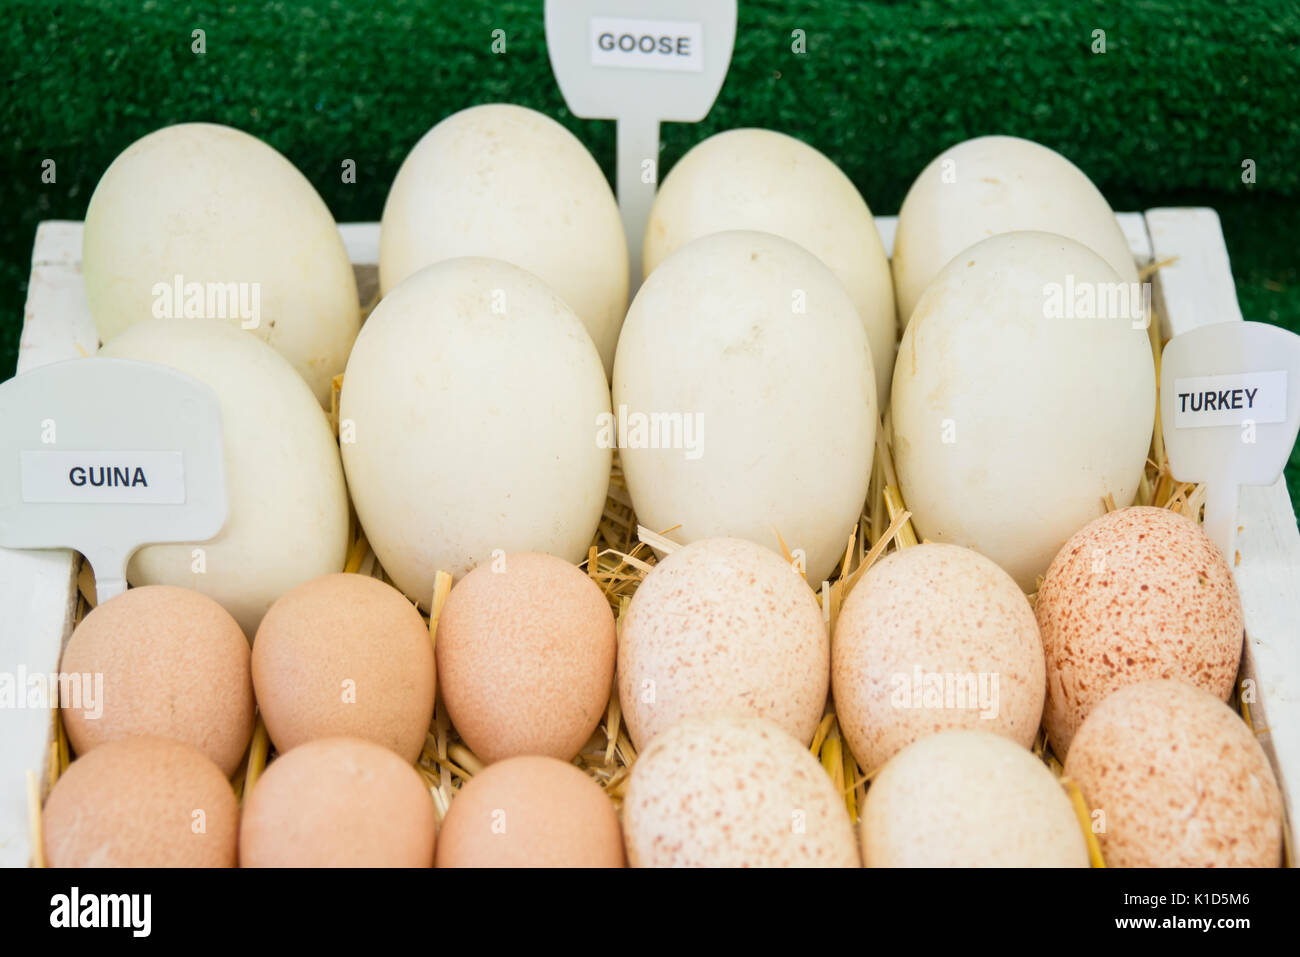 Guina, ganso, y Turquía huevos etiquetados Foto de stock